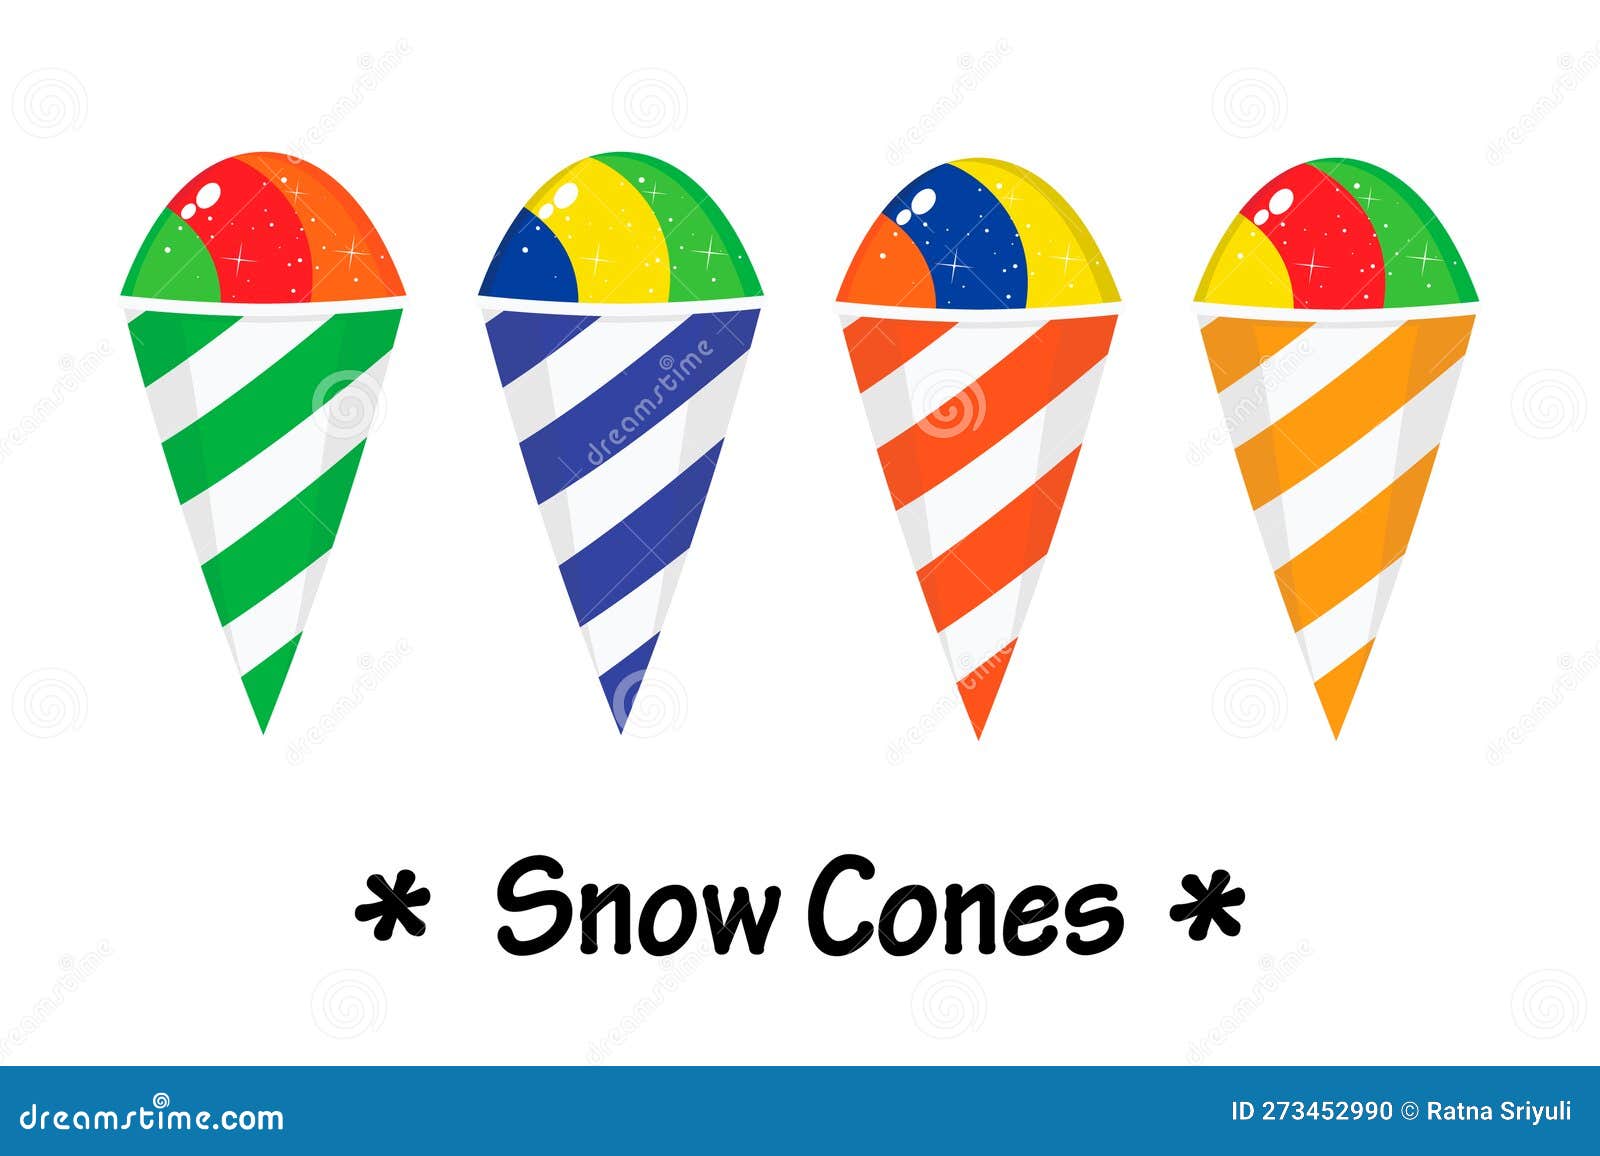 snow cones   flat  